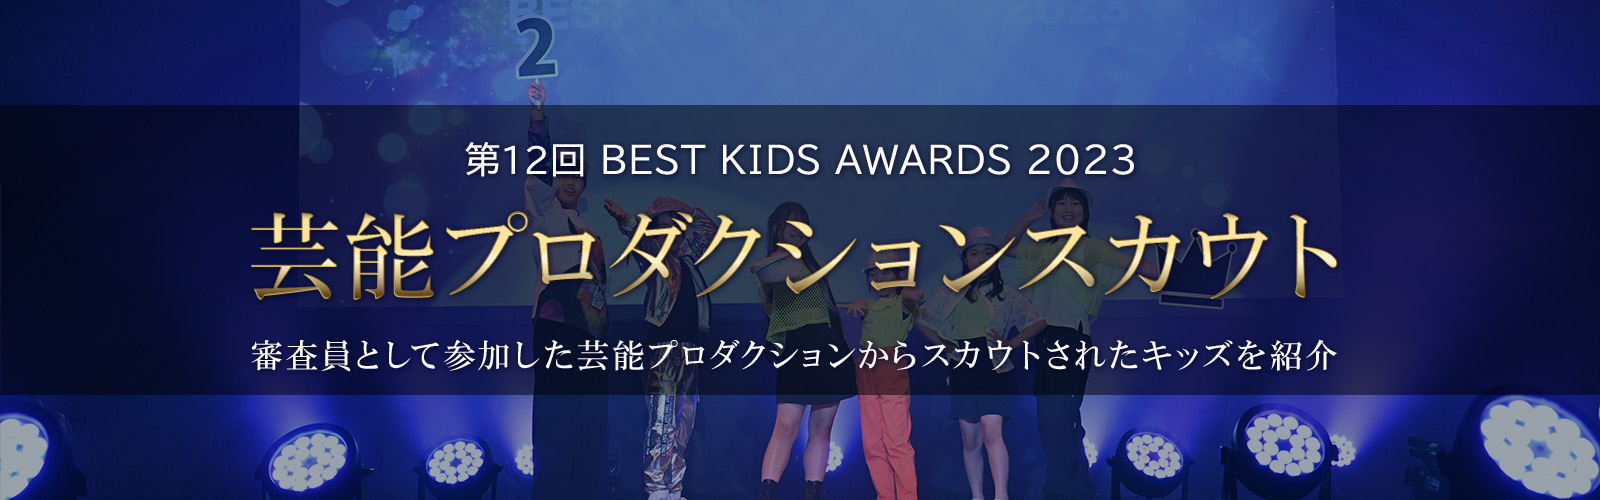 第12回BEST KIDS AUDITION 2023芸能プロダクションスカウト